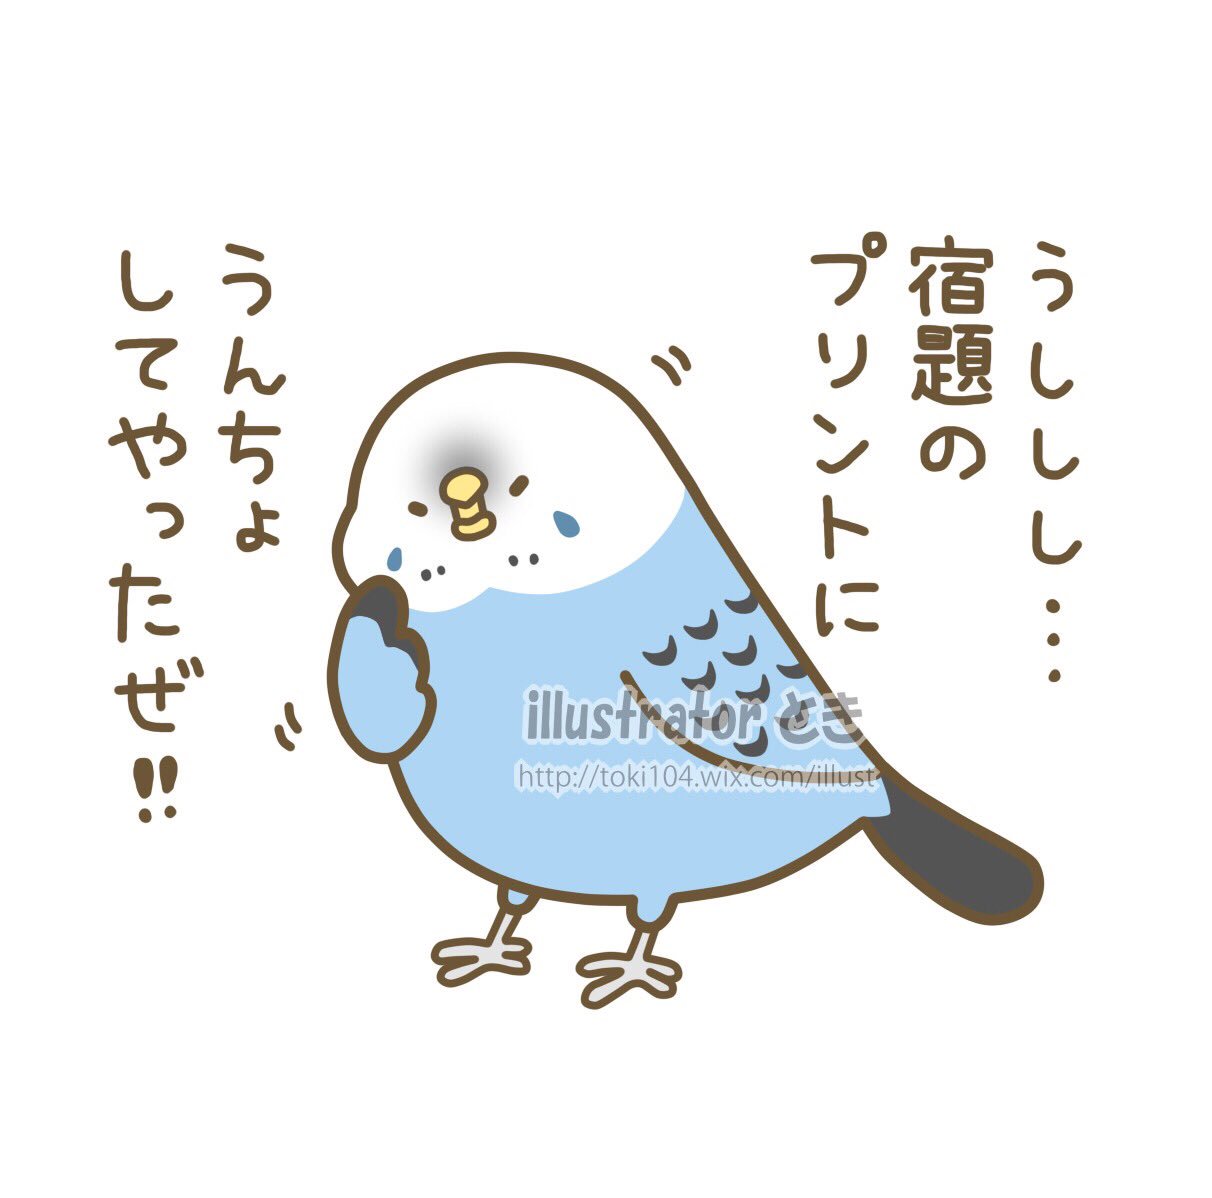 とき 10 22 23大阪で鳥さんのイベント Sur Twitter 学生の時 鳥さんを飼ってた人あるある え わざとやってるの って位 宿題のプリントに うんちょされませんでしたか 私だけですかね 笑 イラスト 絵 キャラクター 1日1絵 1日1枚 一日一絵 一日一枚 今日